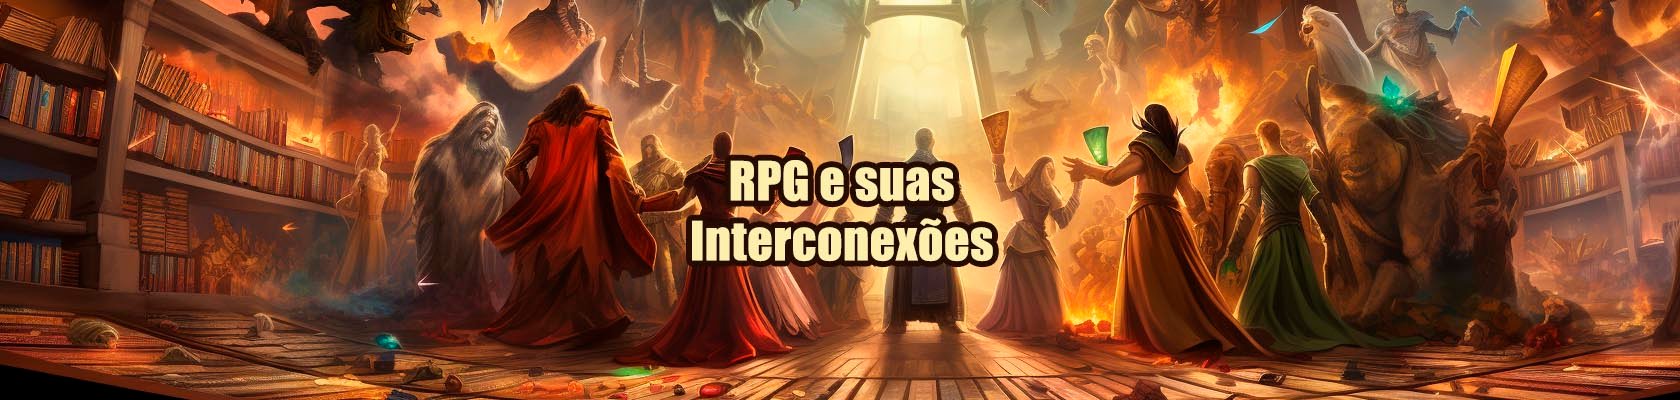 RPG e suas Interconexões 